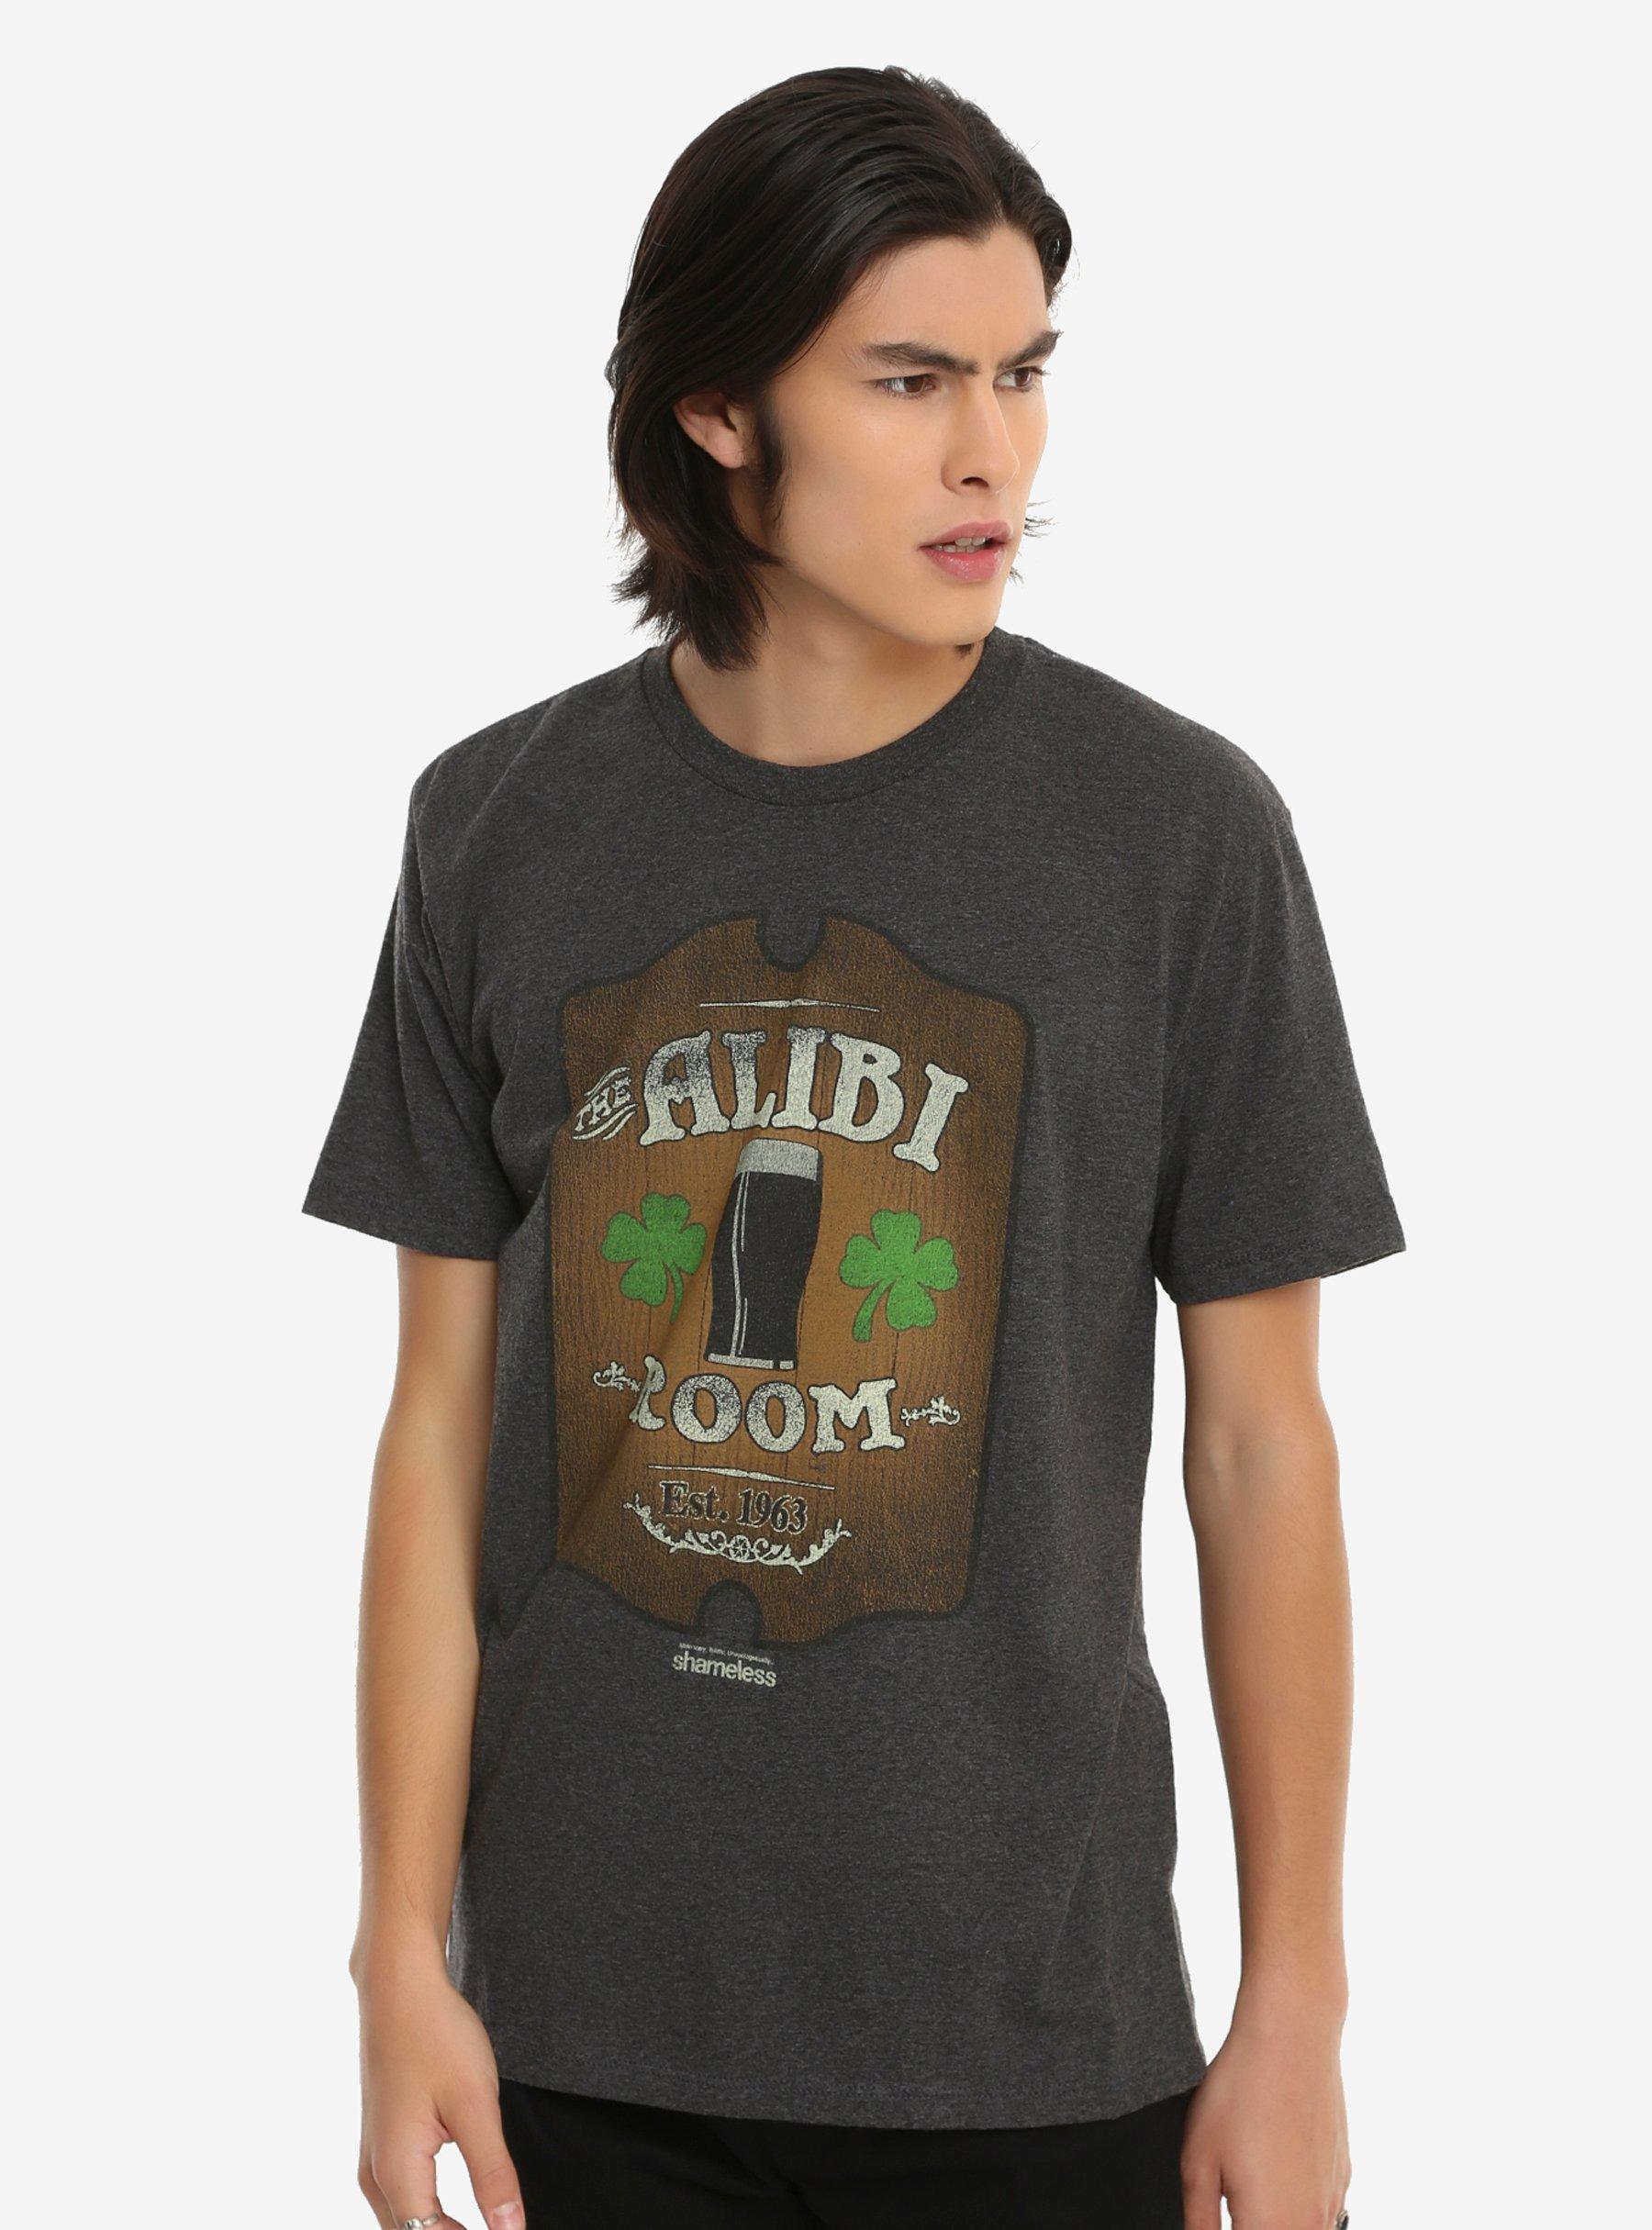 Shameless Alibi Room T-Shirt, , alternate